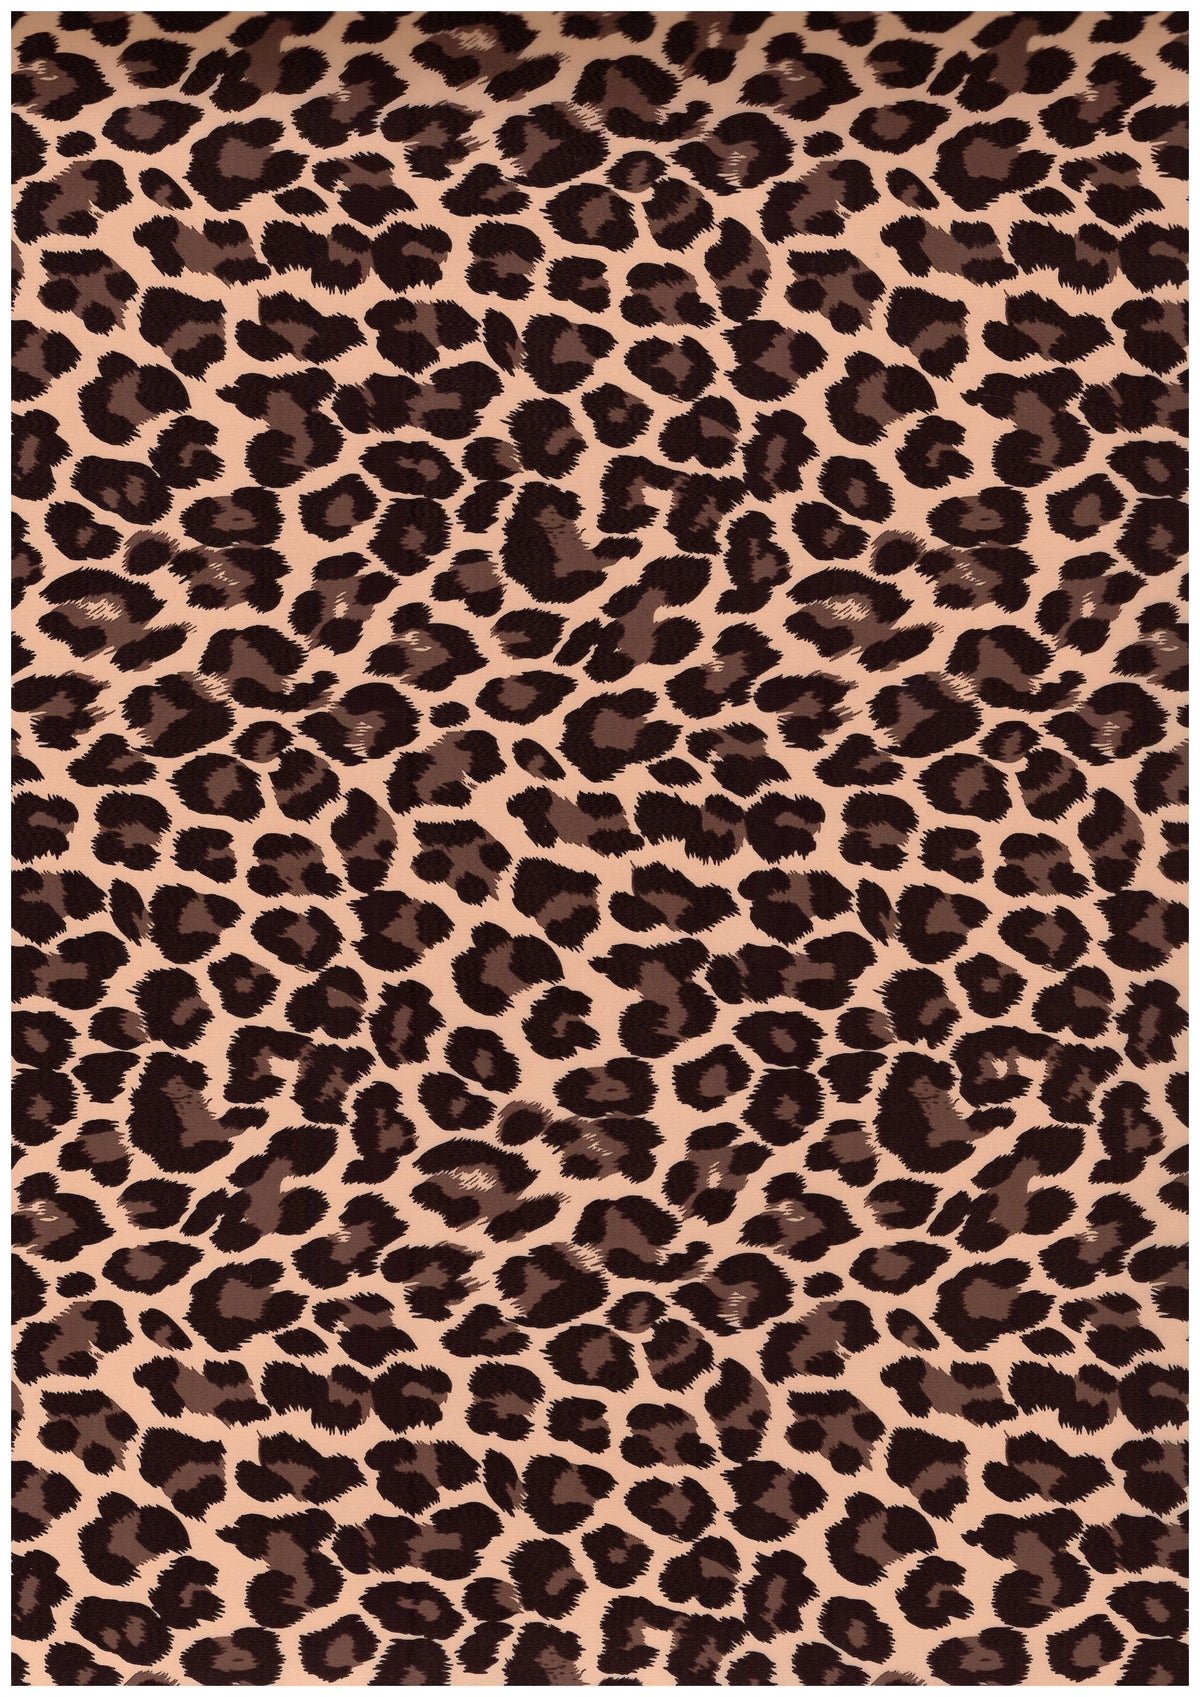 Ultra Flex Pattern Foil Leopard-Gold 20” wide Heat TRANSFER Vinyl